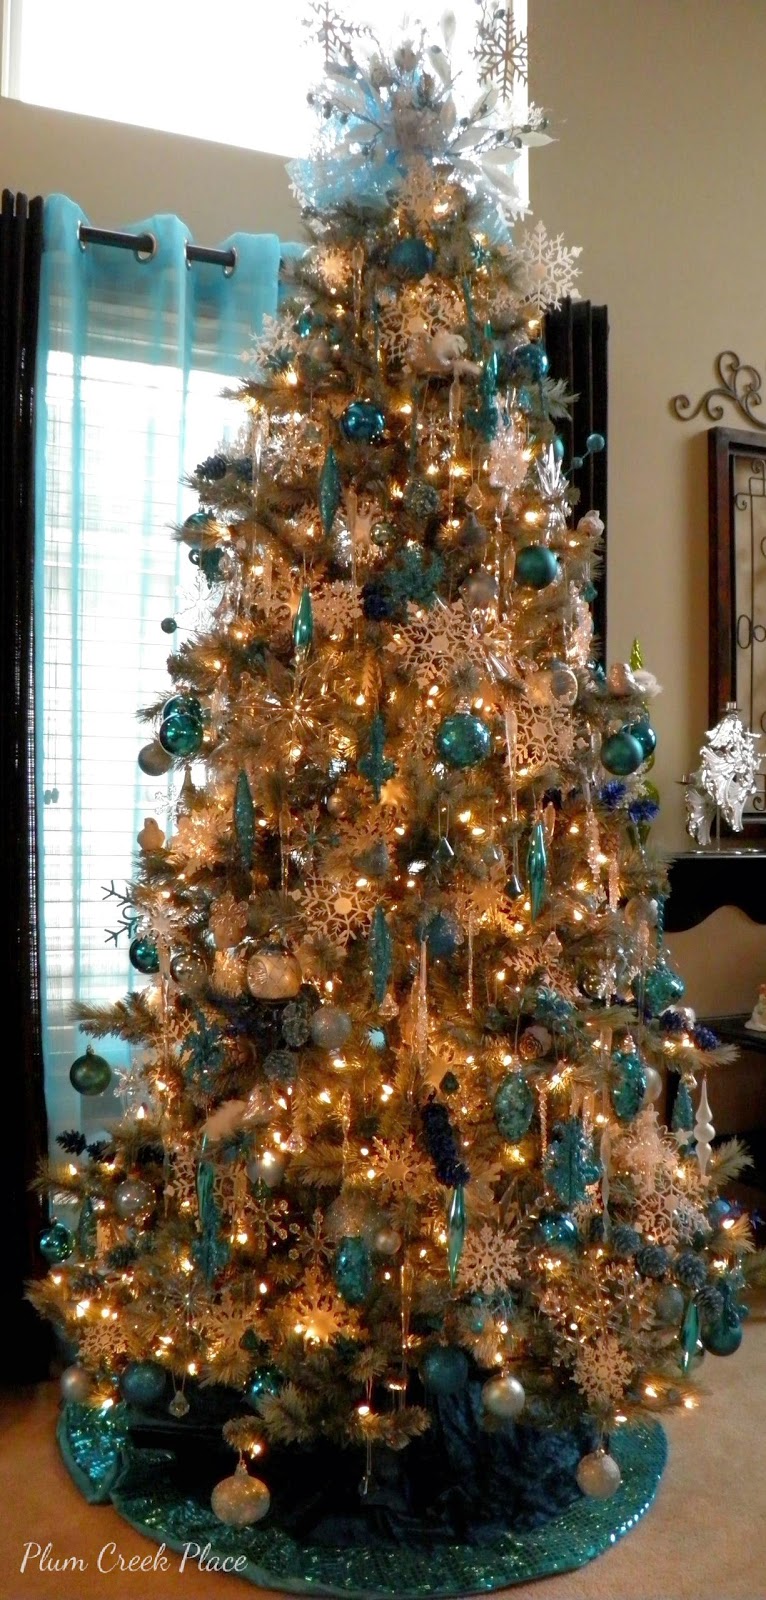 Teal and aqua snowflake Christmas tree